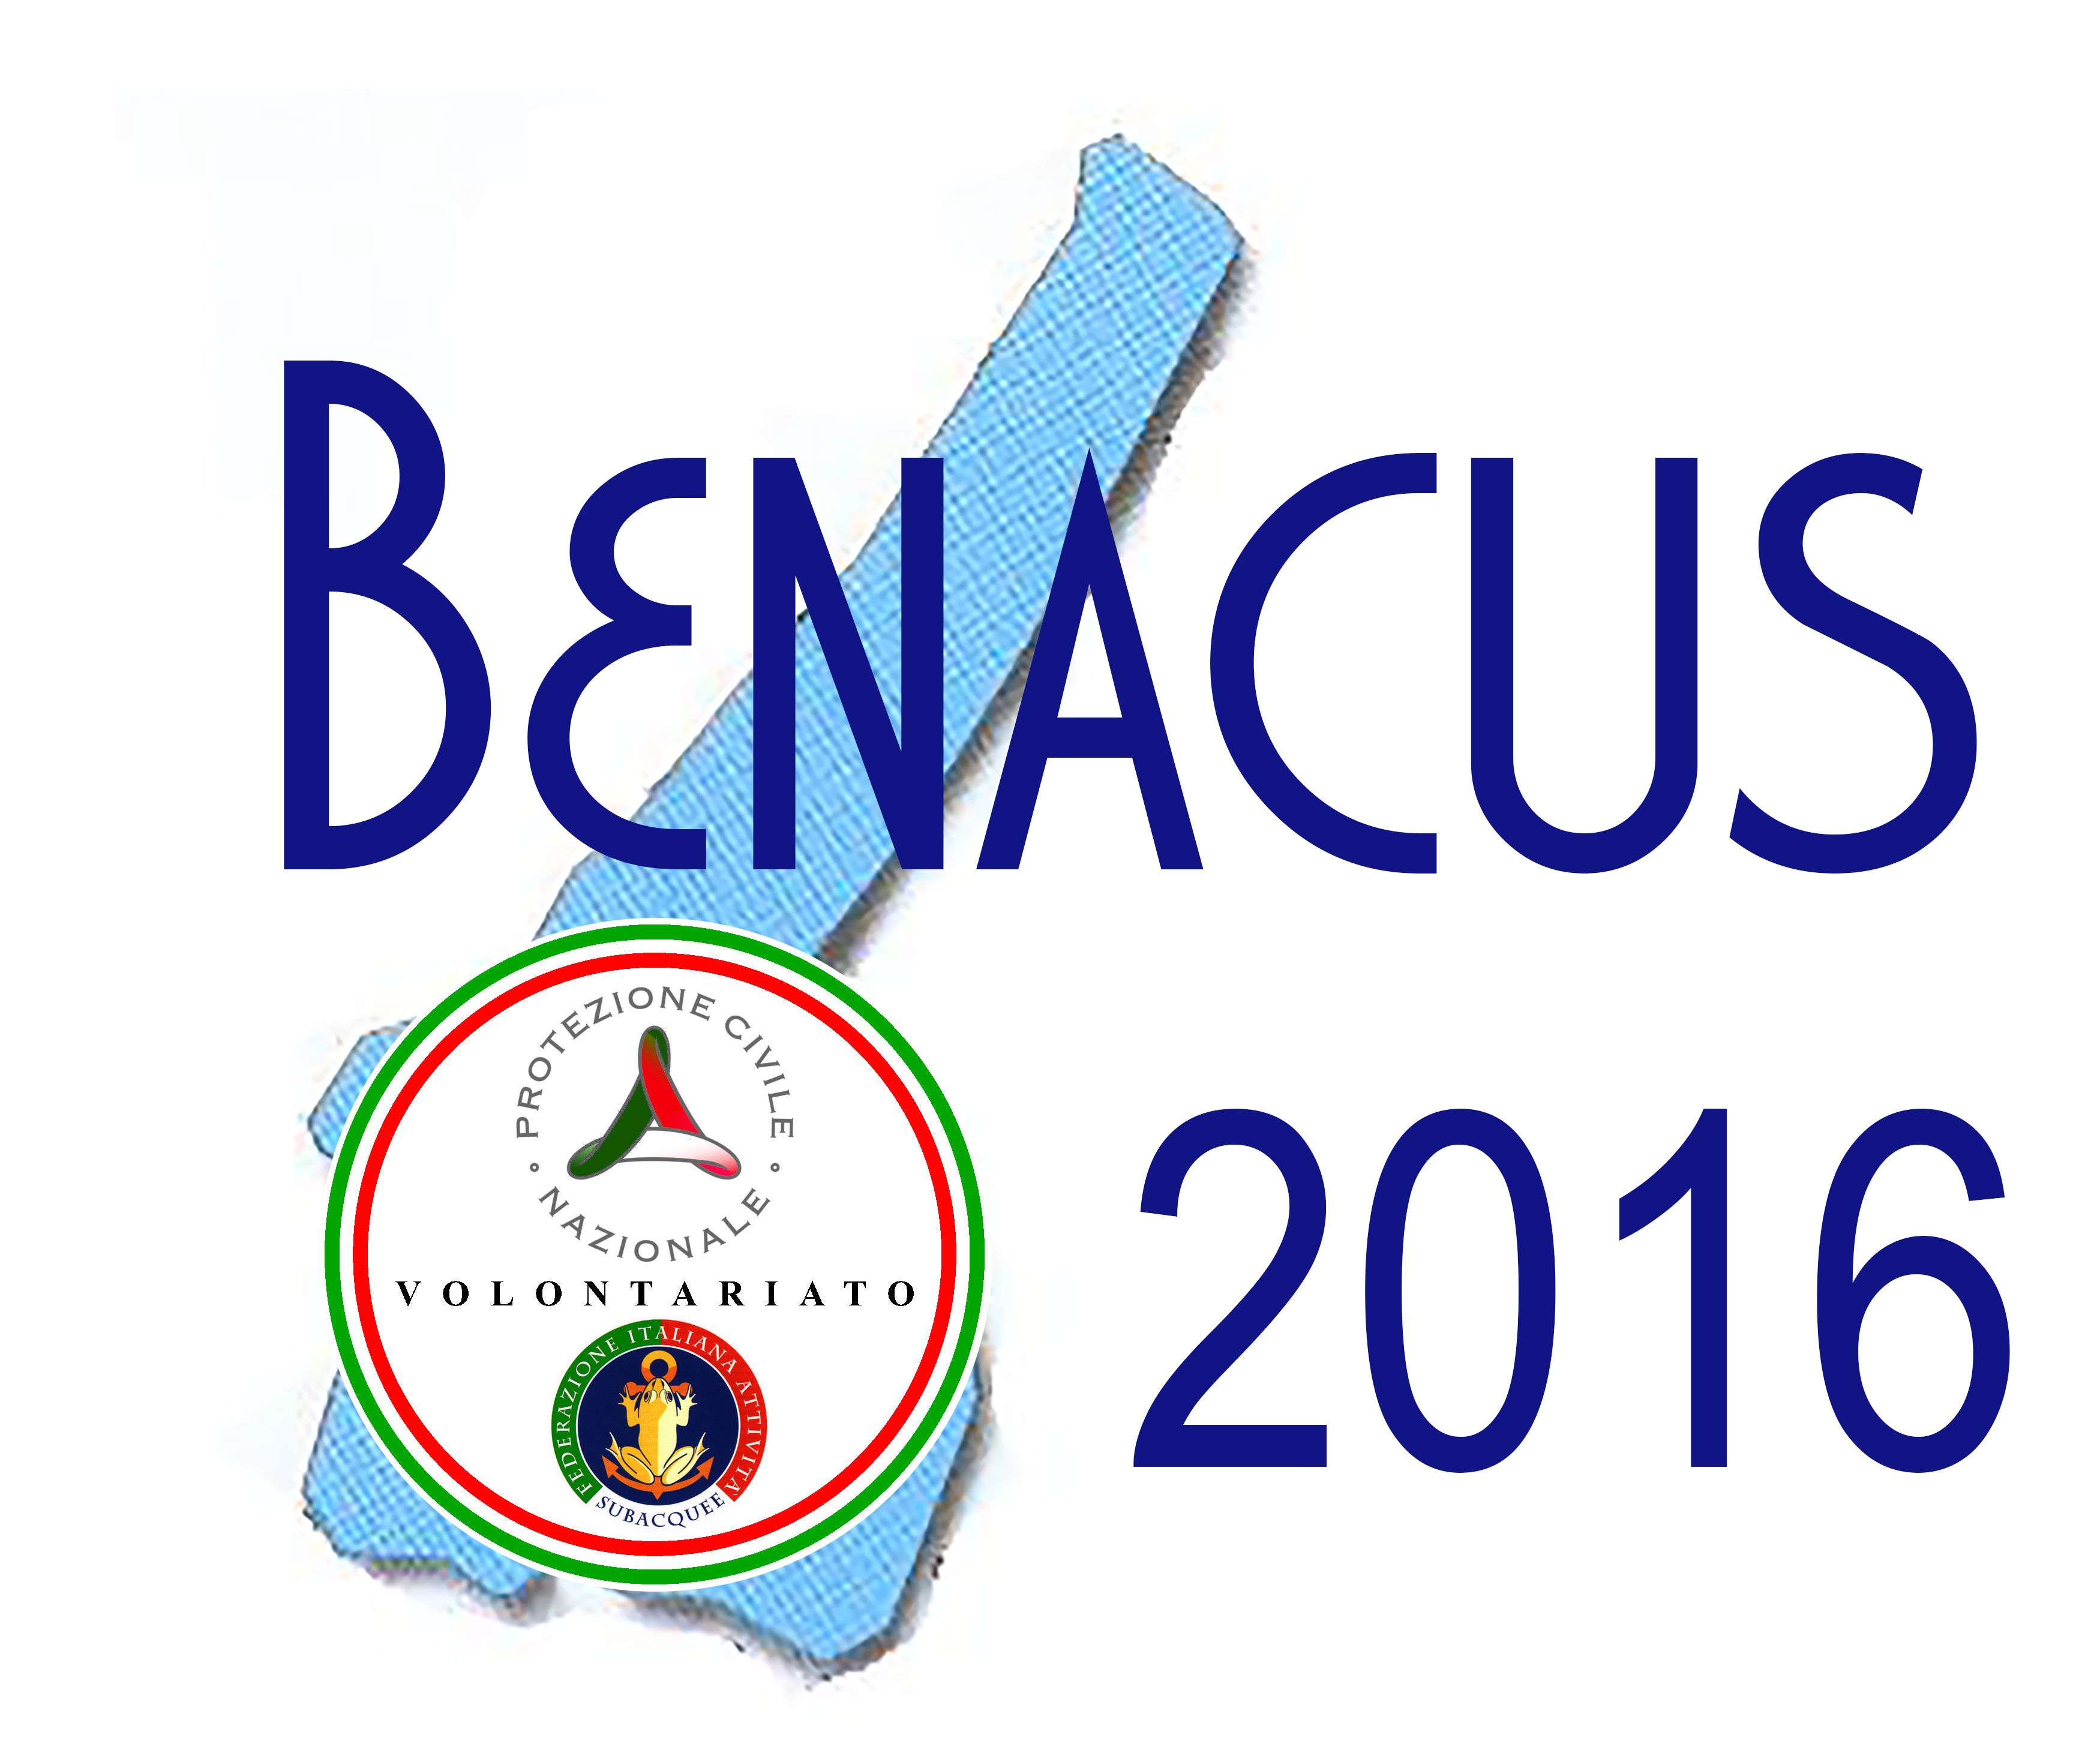 benacus2016-logo2